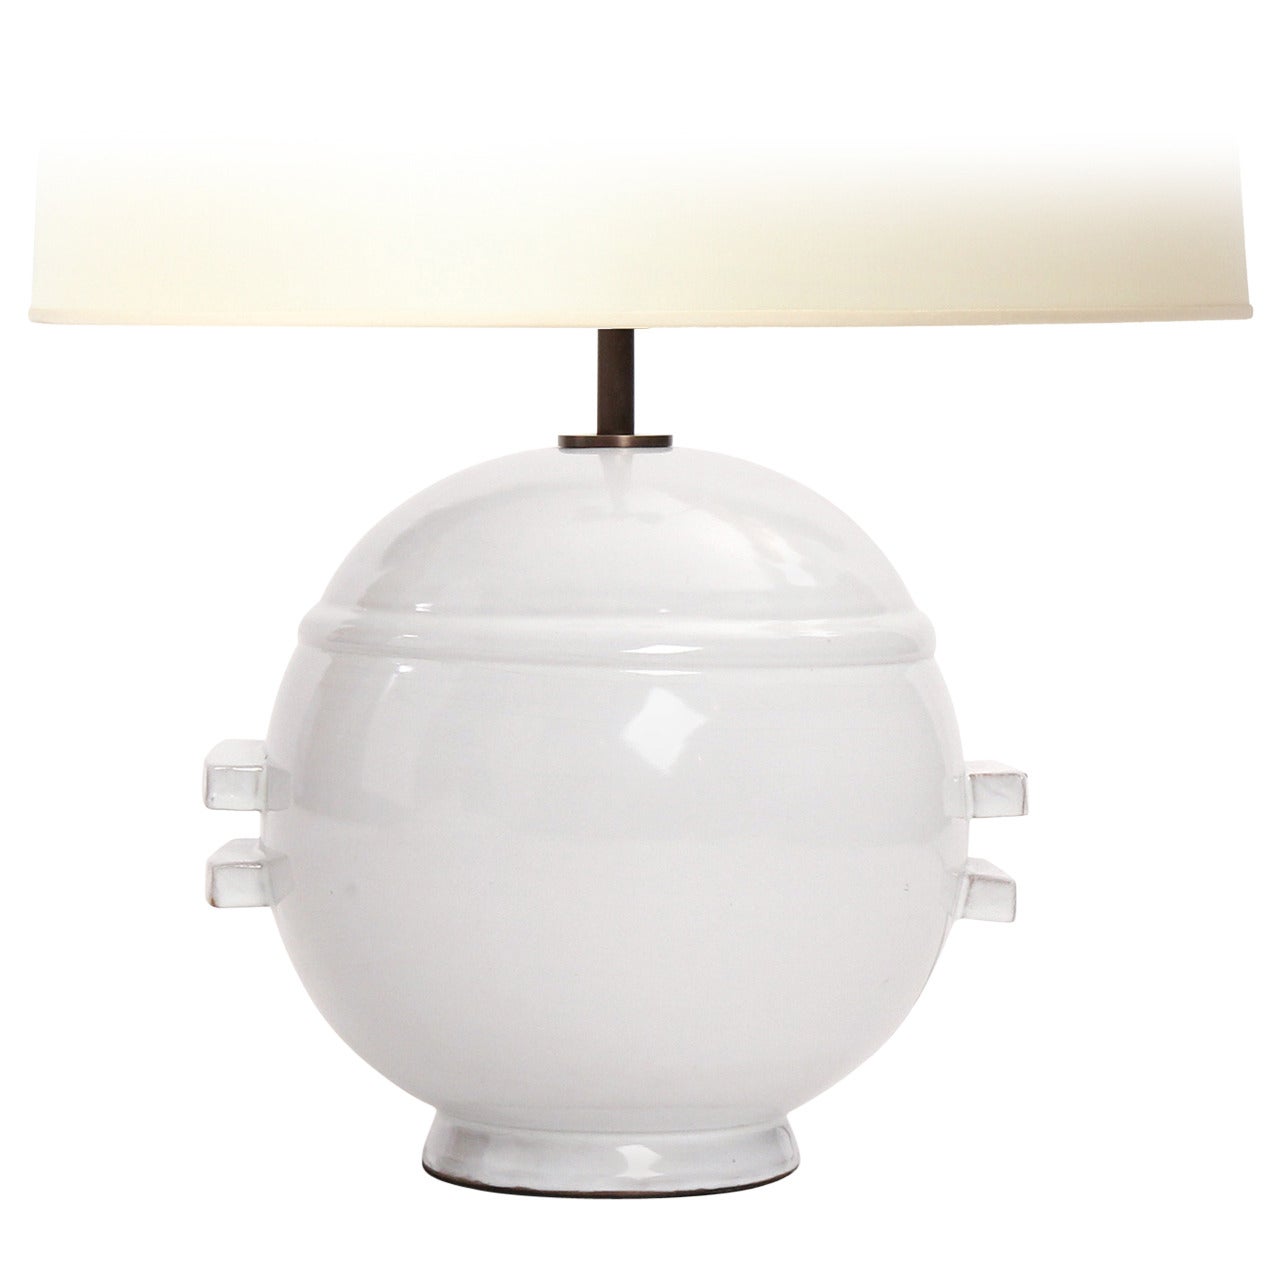 Spherical Ceramic Table Lamp